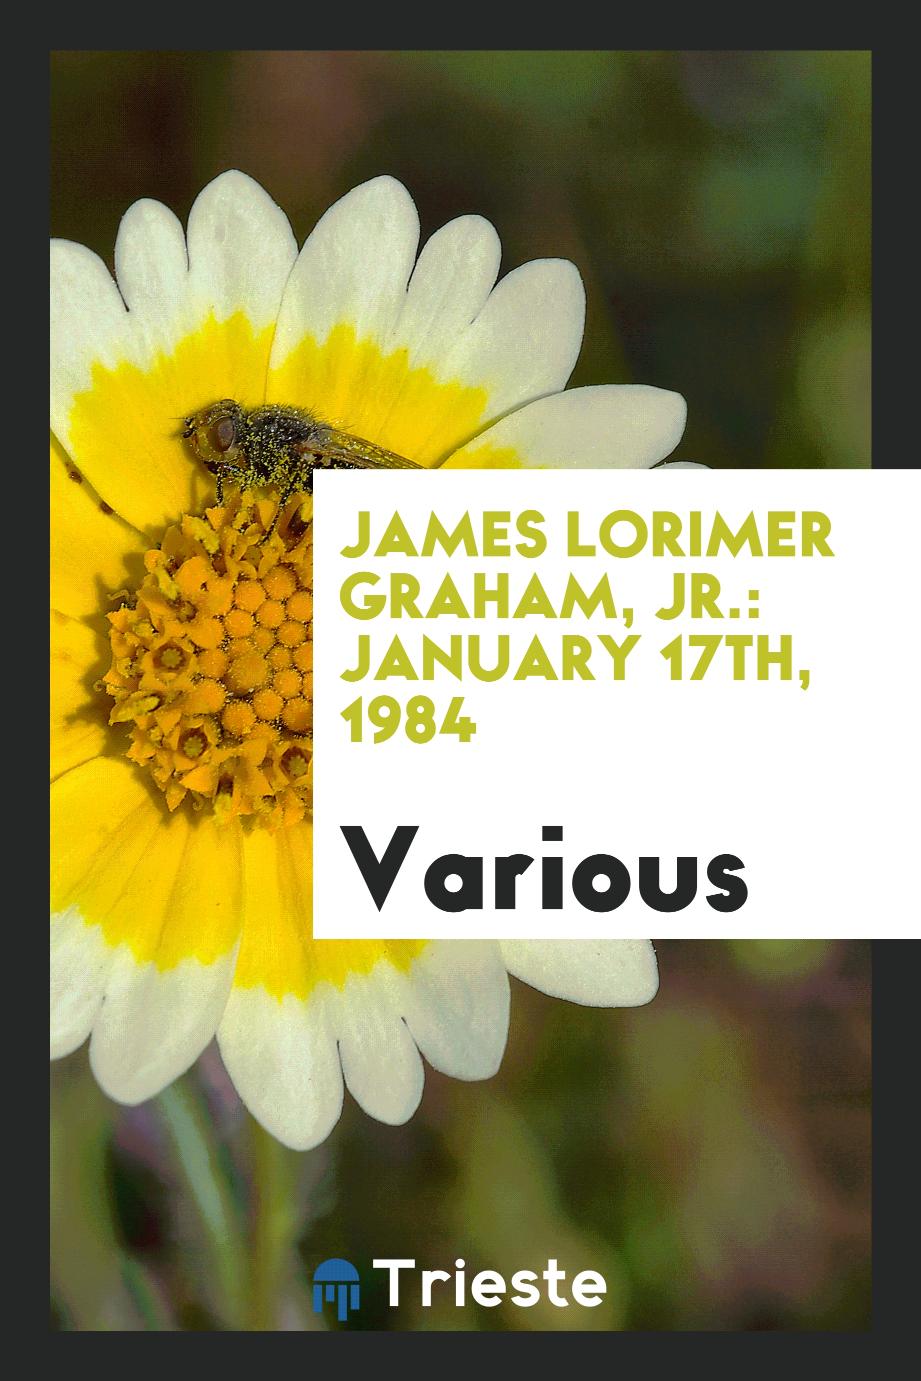 James Lorimer Graham, Jr.: January 17th, 1984